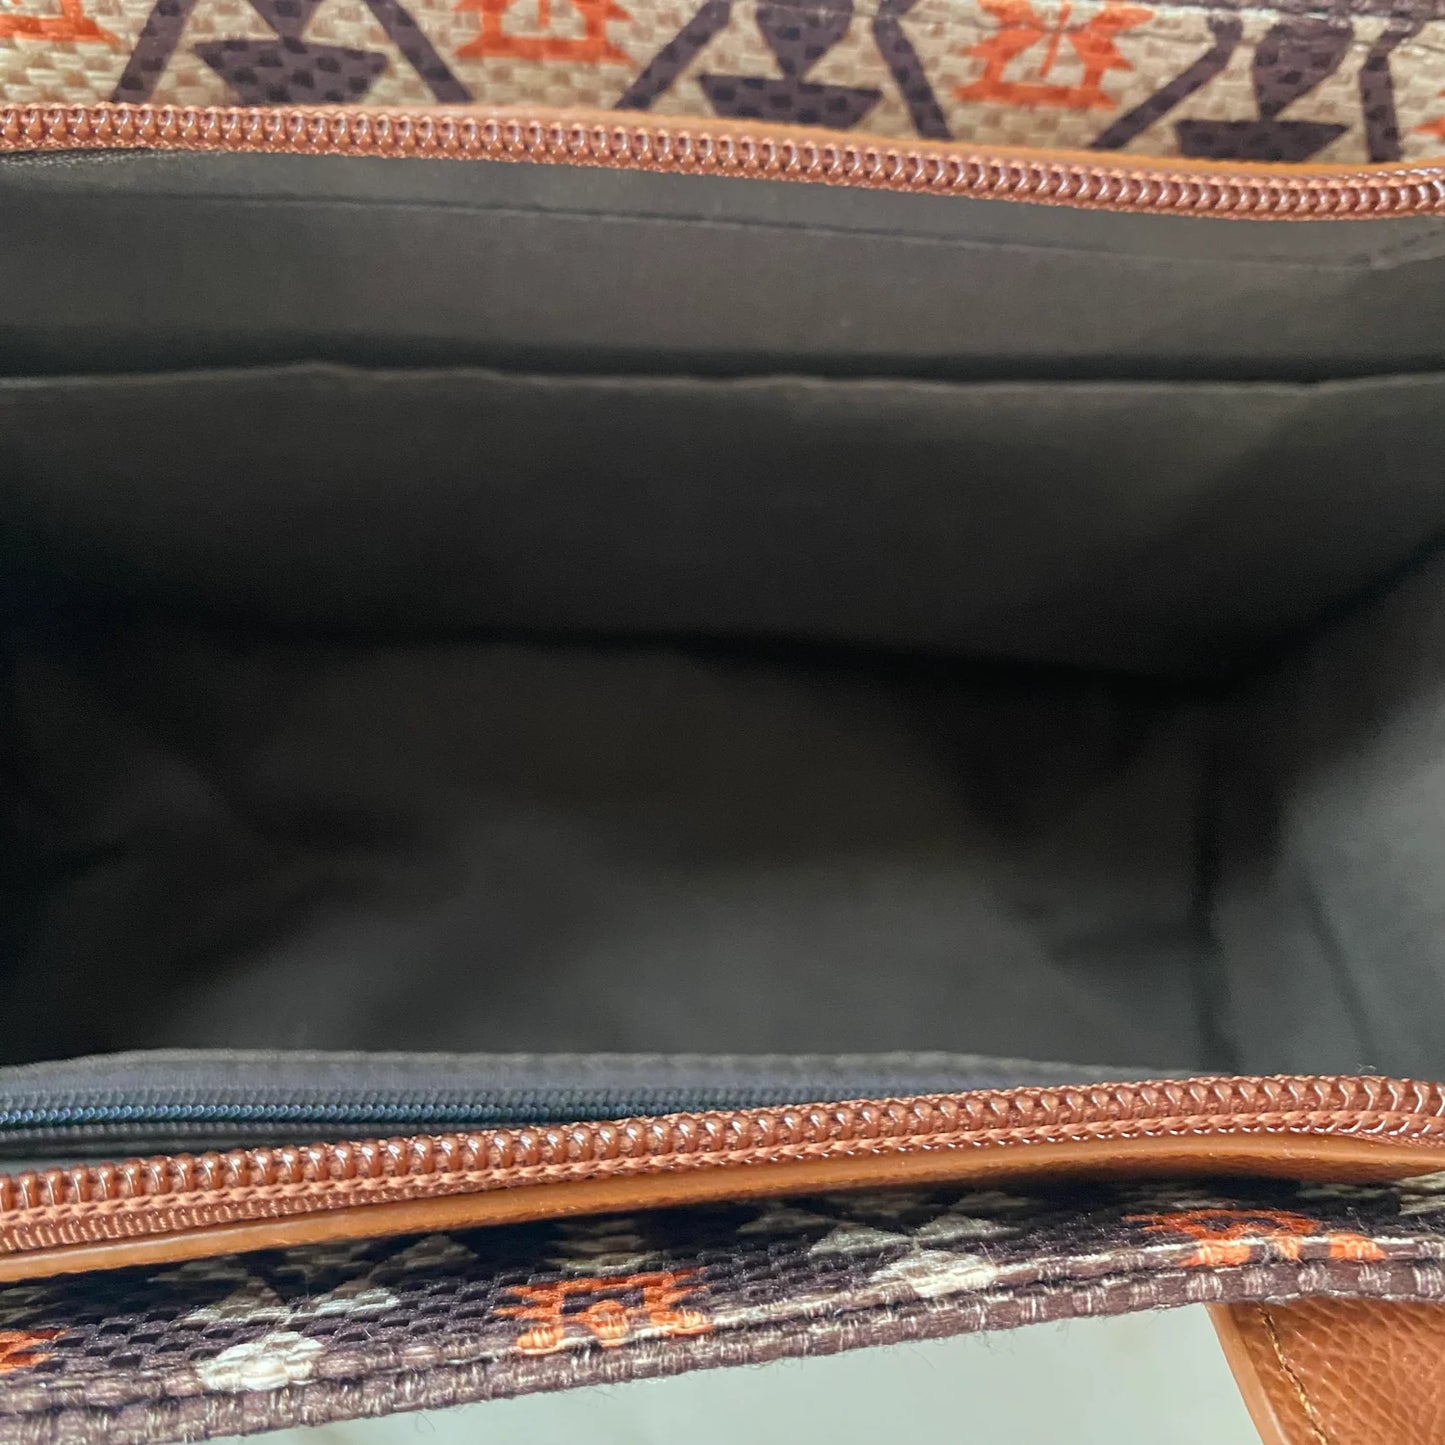 Arizona Tote Bag & Card Wallet in Tan